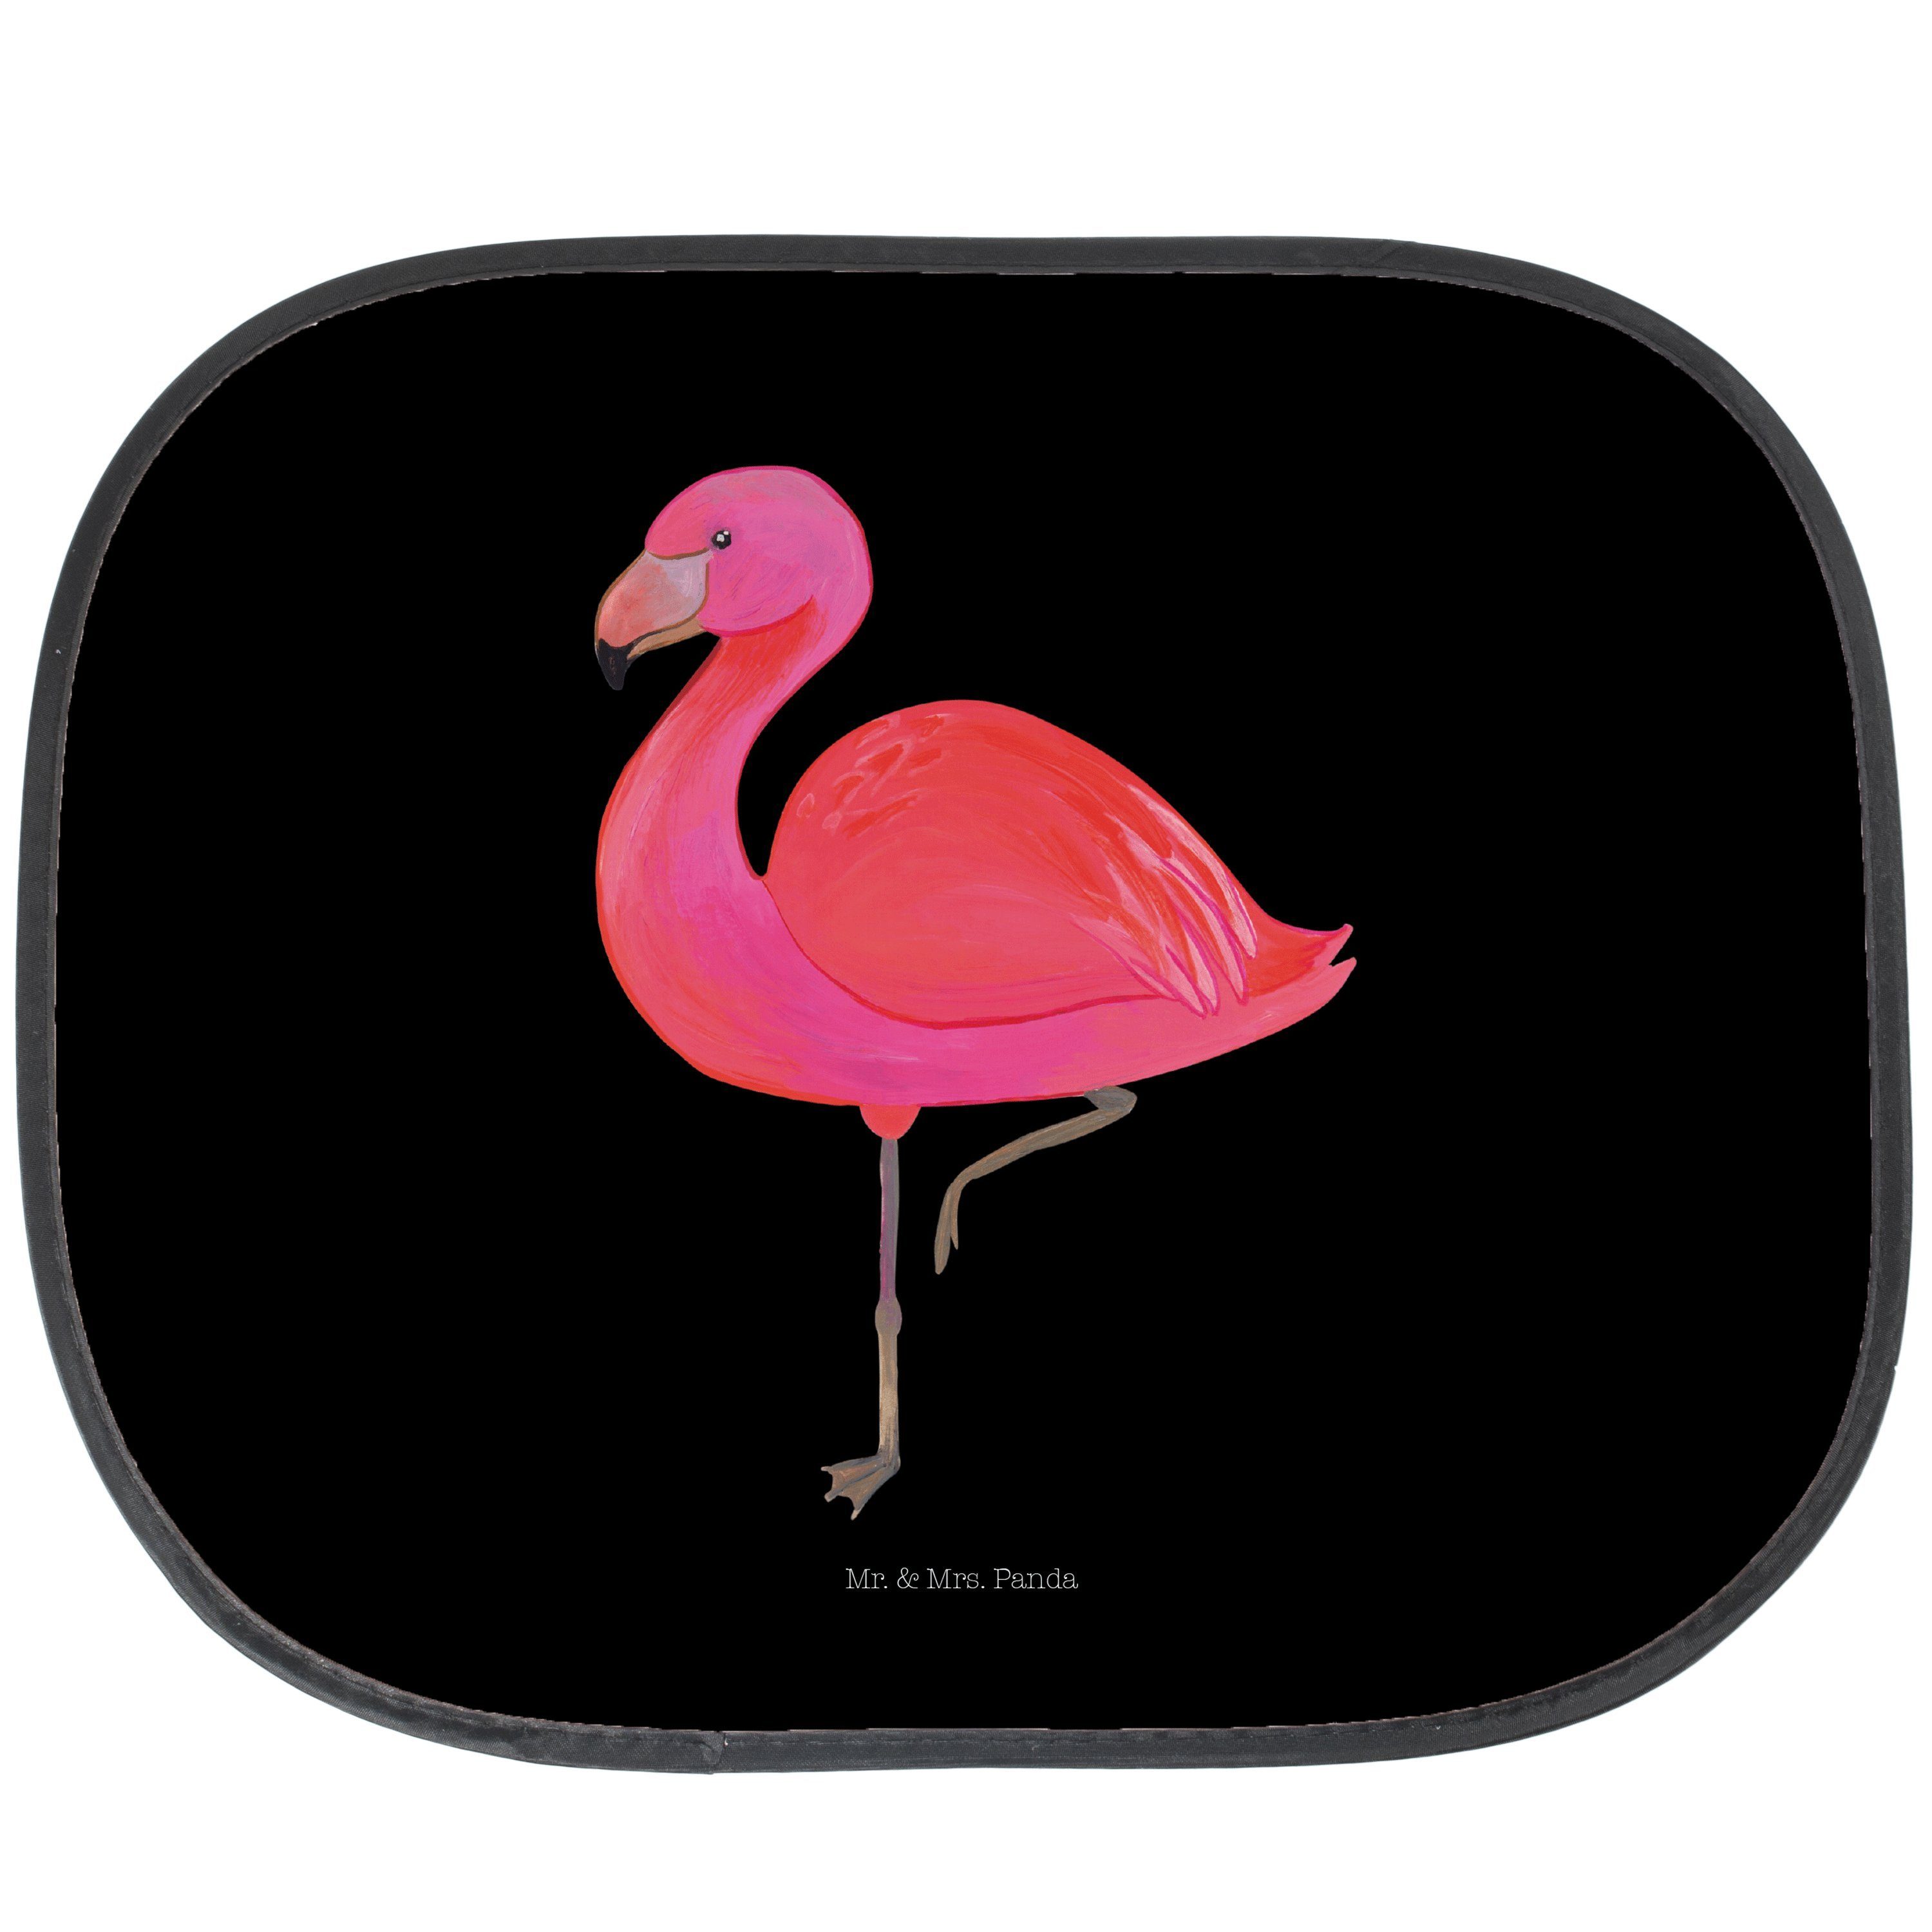 Sonnenschutz Flamingo classic - Schwarz - Geschenk, Auto Sonnenschutz, Außenseiter, Mr. & Mrs. Panda, Seidenmatt